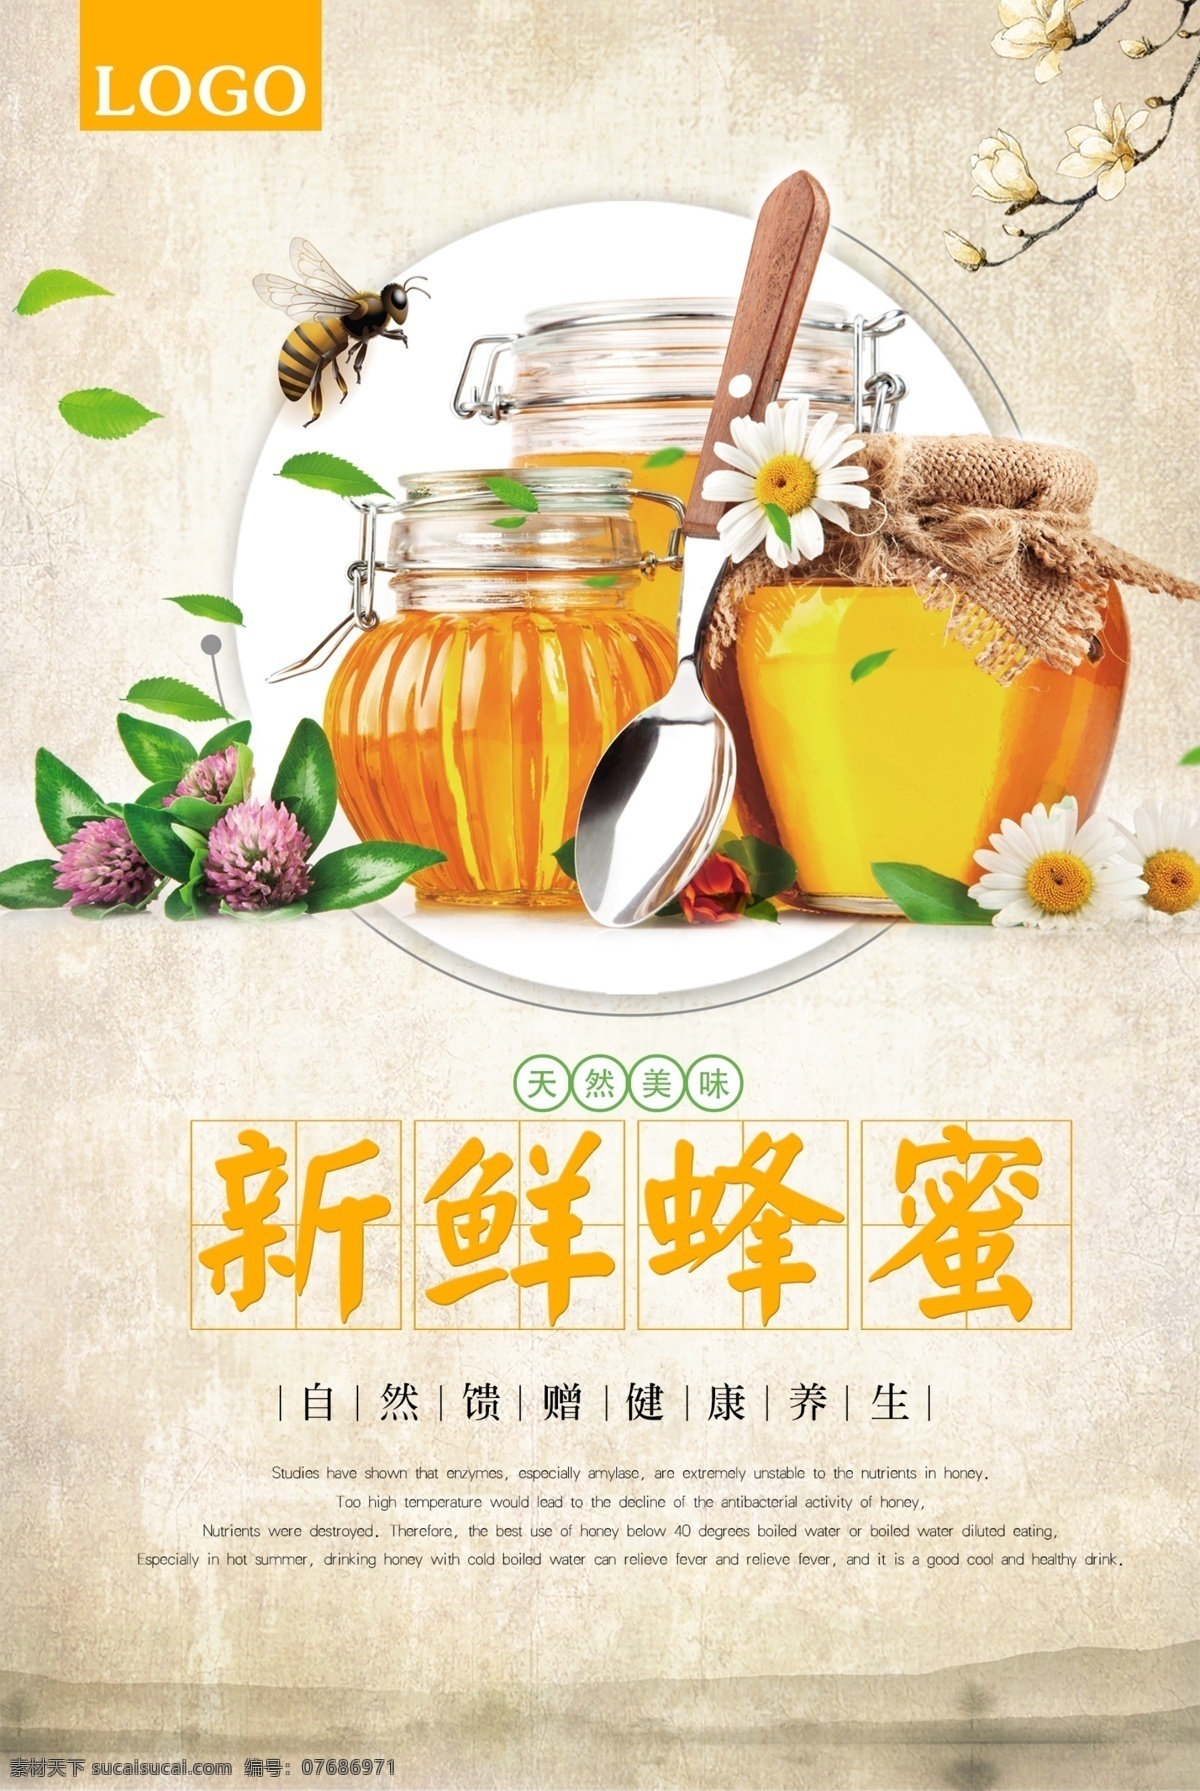 简约 蜂蜜 促销 模板 蜂蜜海报 蜂蜜展板 蜂蜜广告 野生蜂胶 天然蜂蜜 自然蜂蜜 蜂蜜宣单 蜂蜜画册 蜂蜜模板 蜂蜜制作 蜂蜜工艺 蜂蜜包装 psd源文件